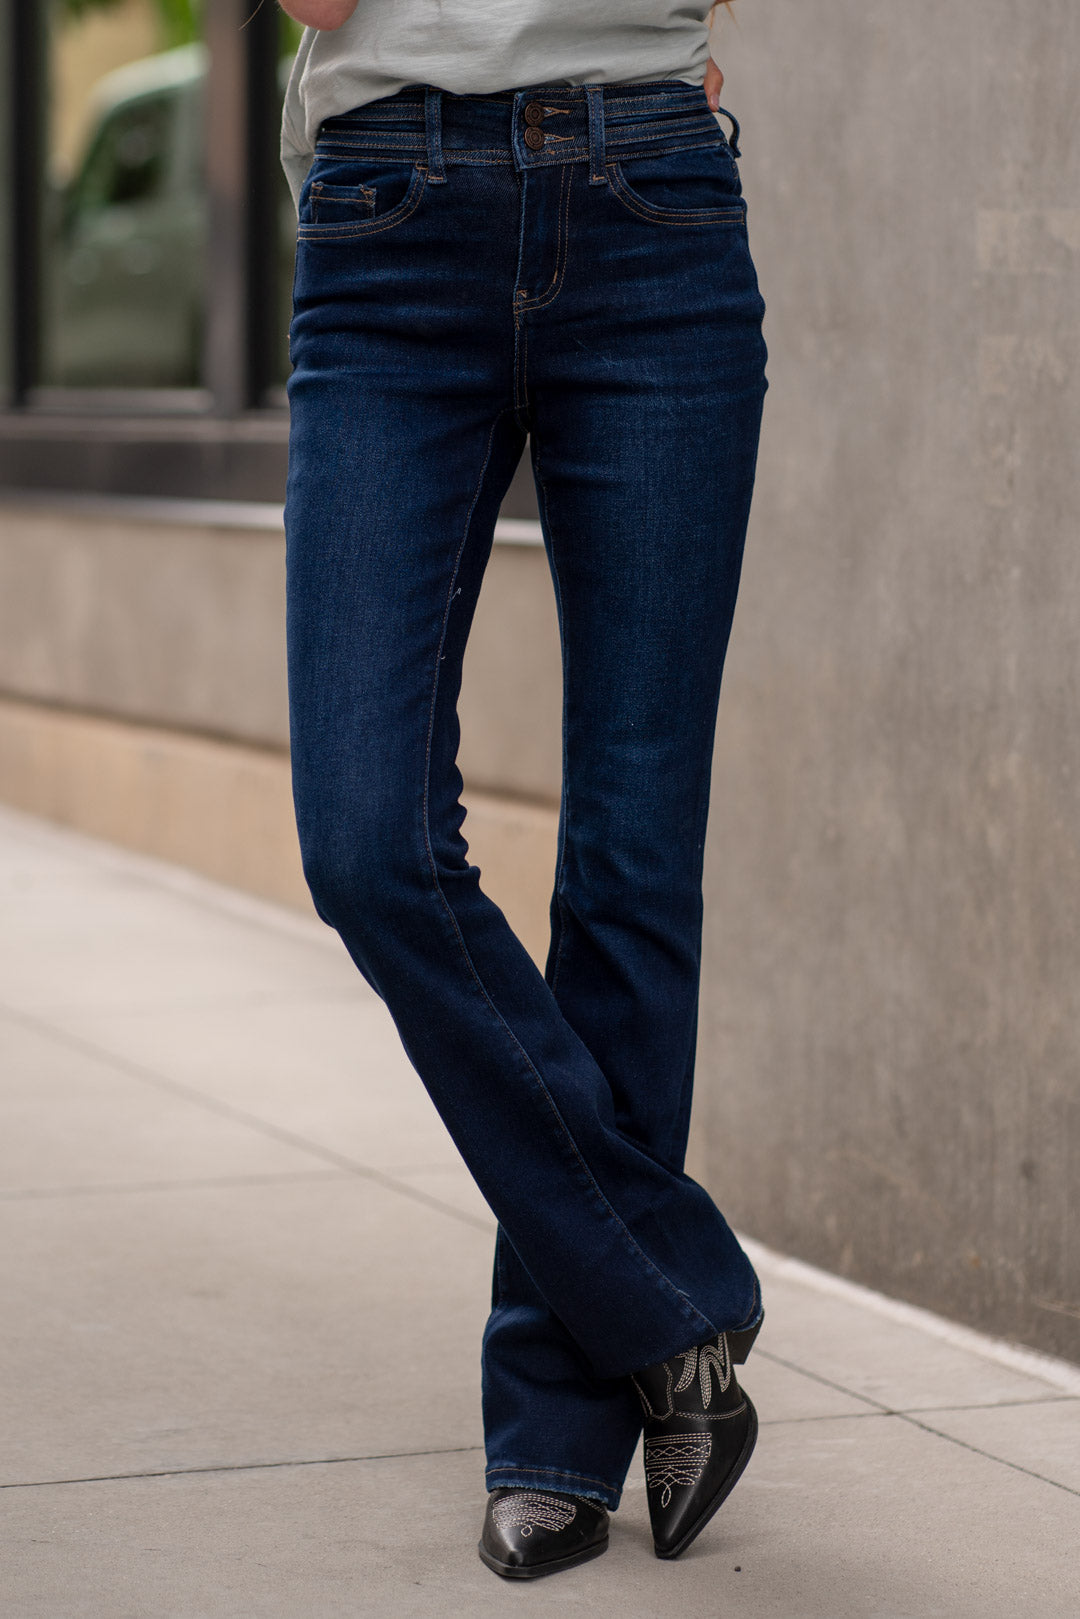 VERVET Jeans Brand-New Double Waist Band High Rise Boot Cut T6084 ...